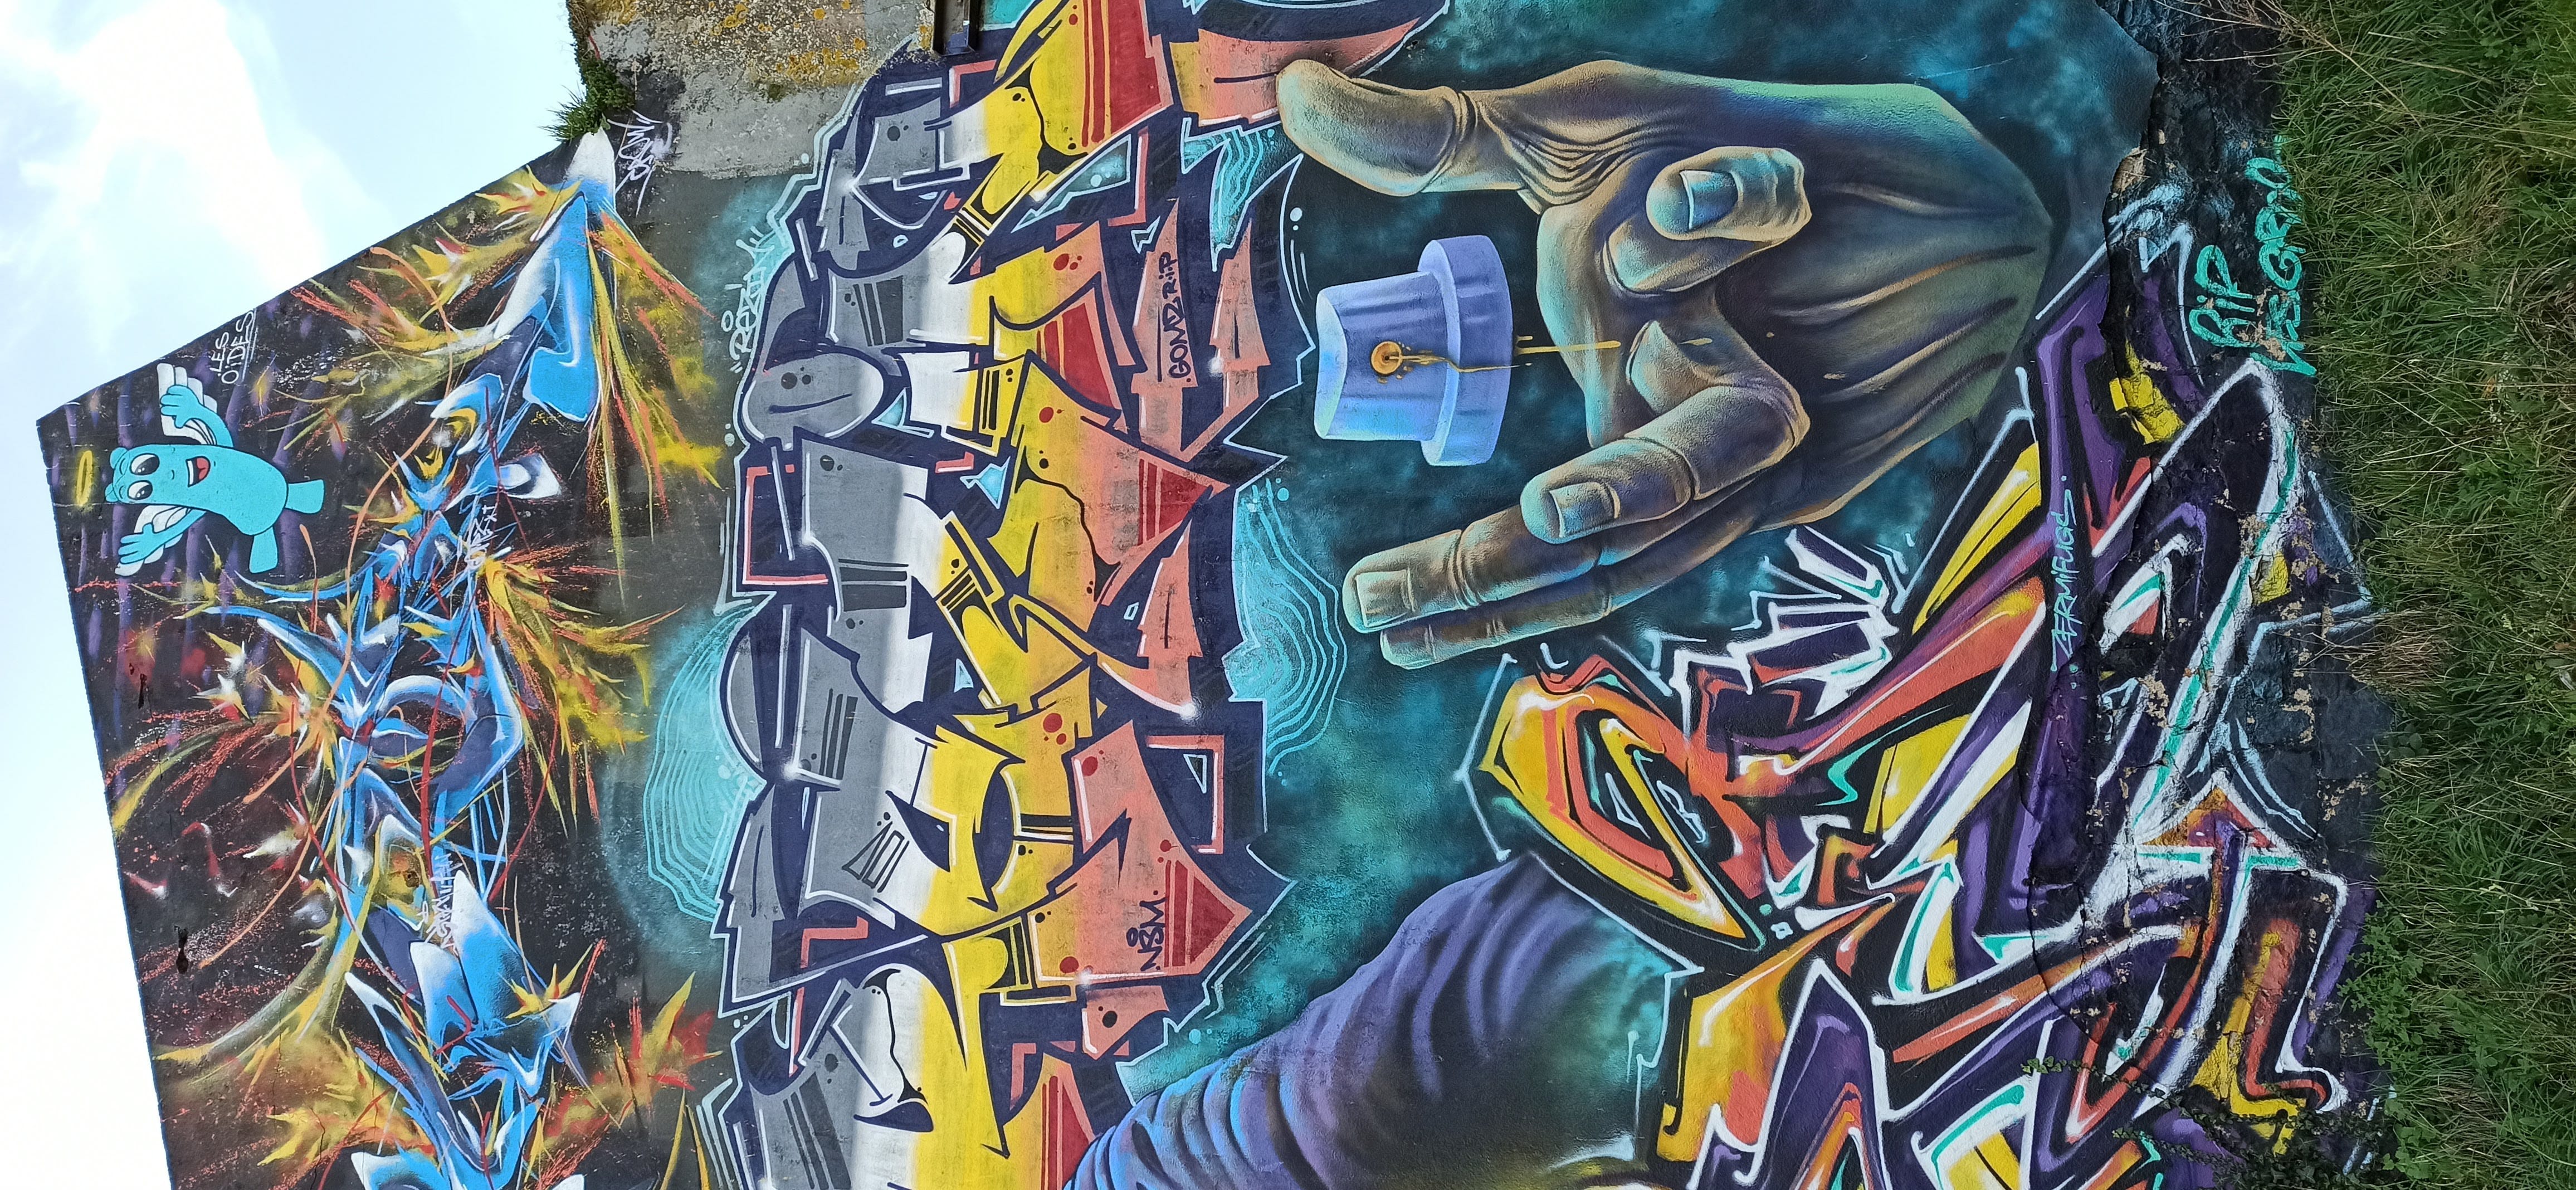 Graffiti 4873  capturé par Rabot à Lorient France